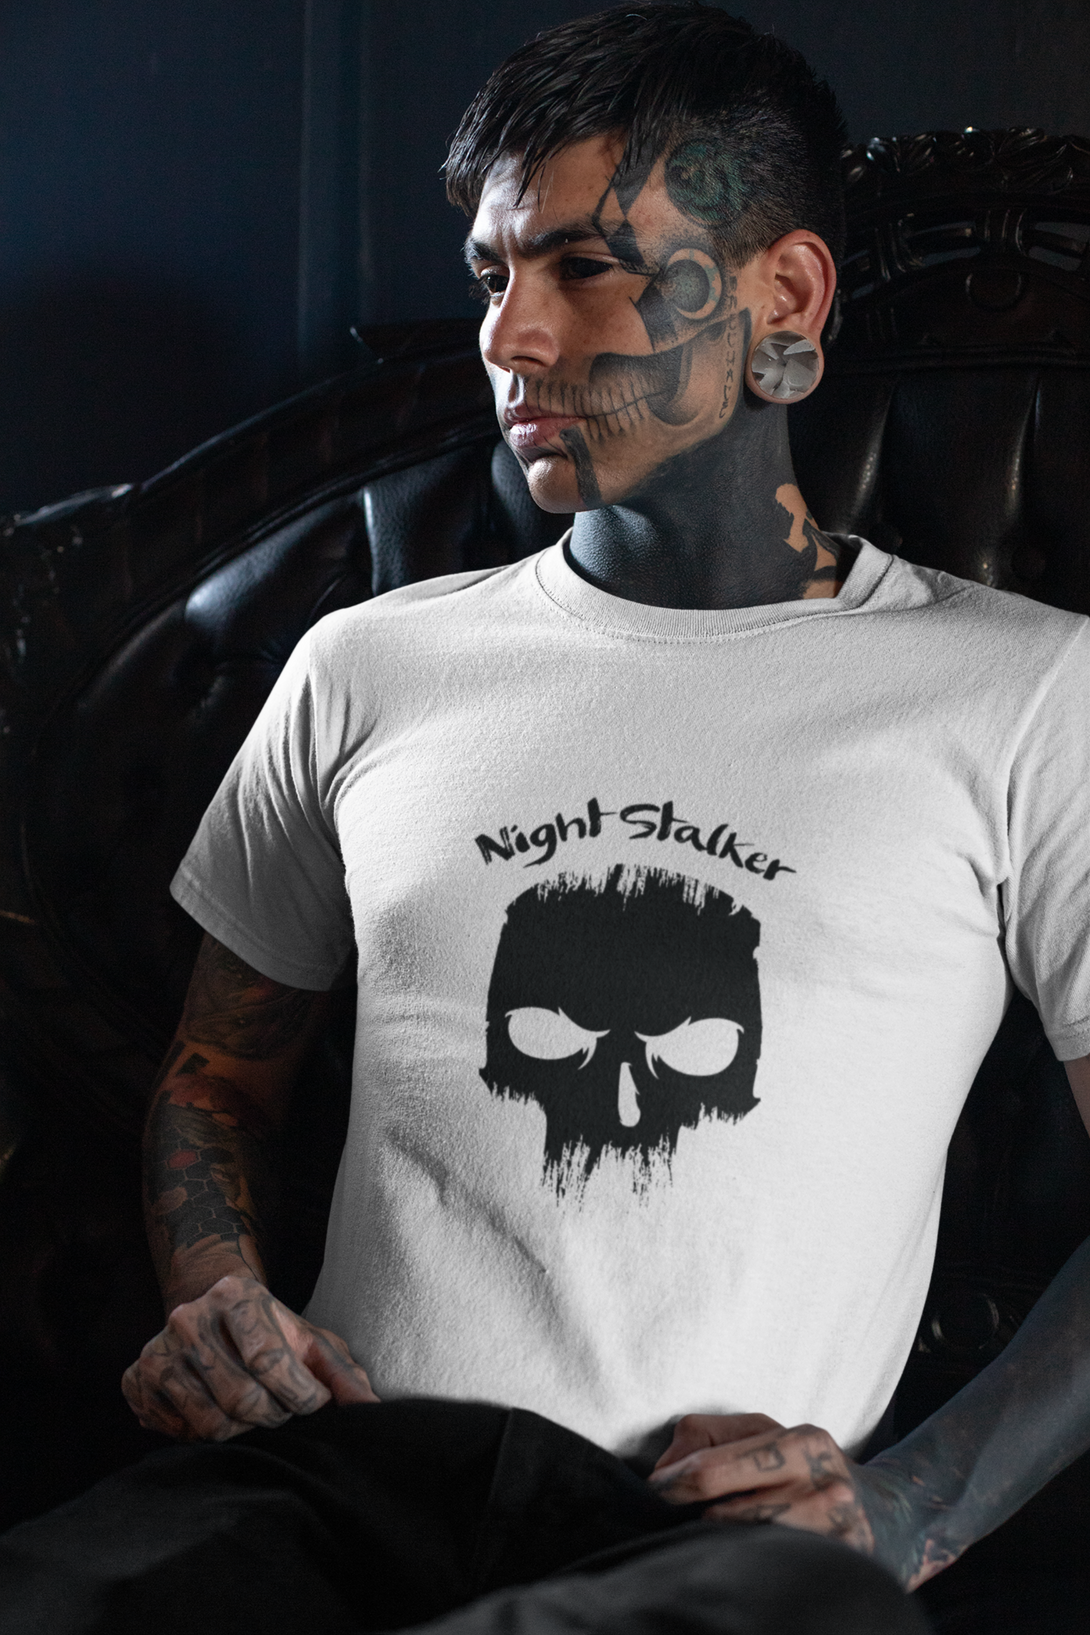 Dark Skull Night Stalker Printed T Shirt For Men - WowWaves - 4